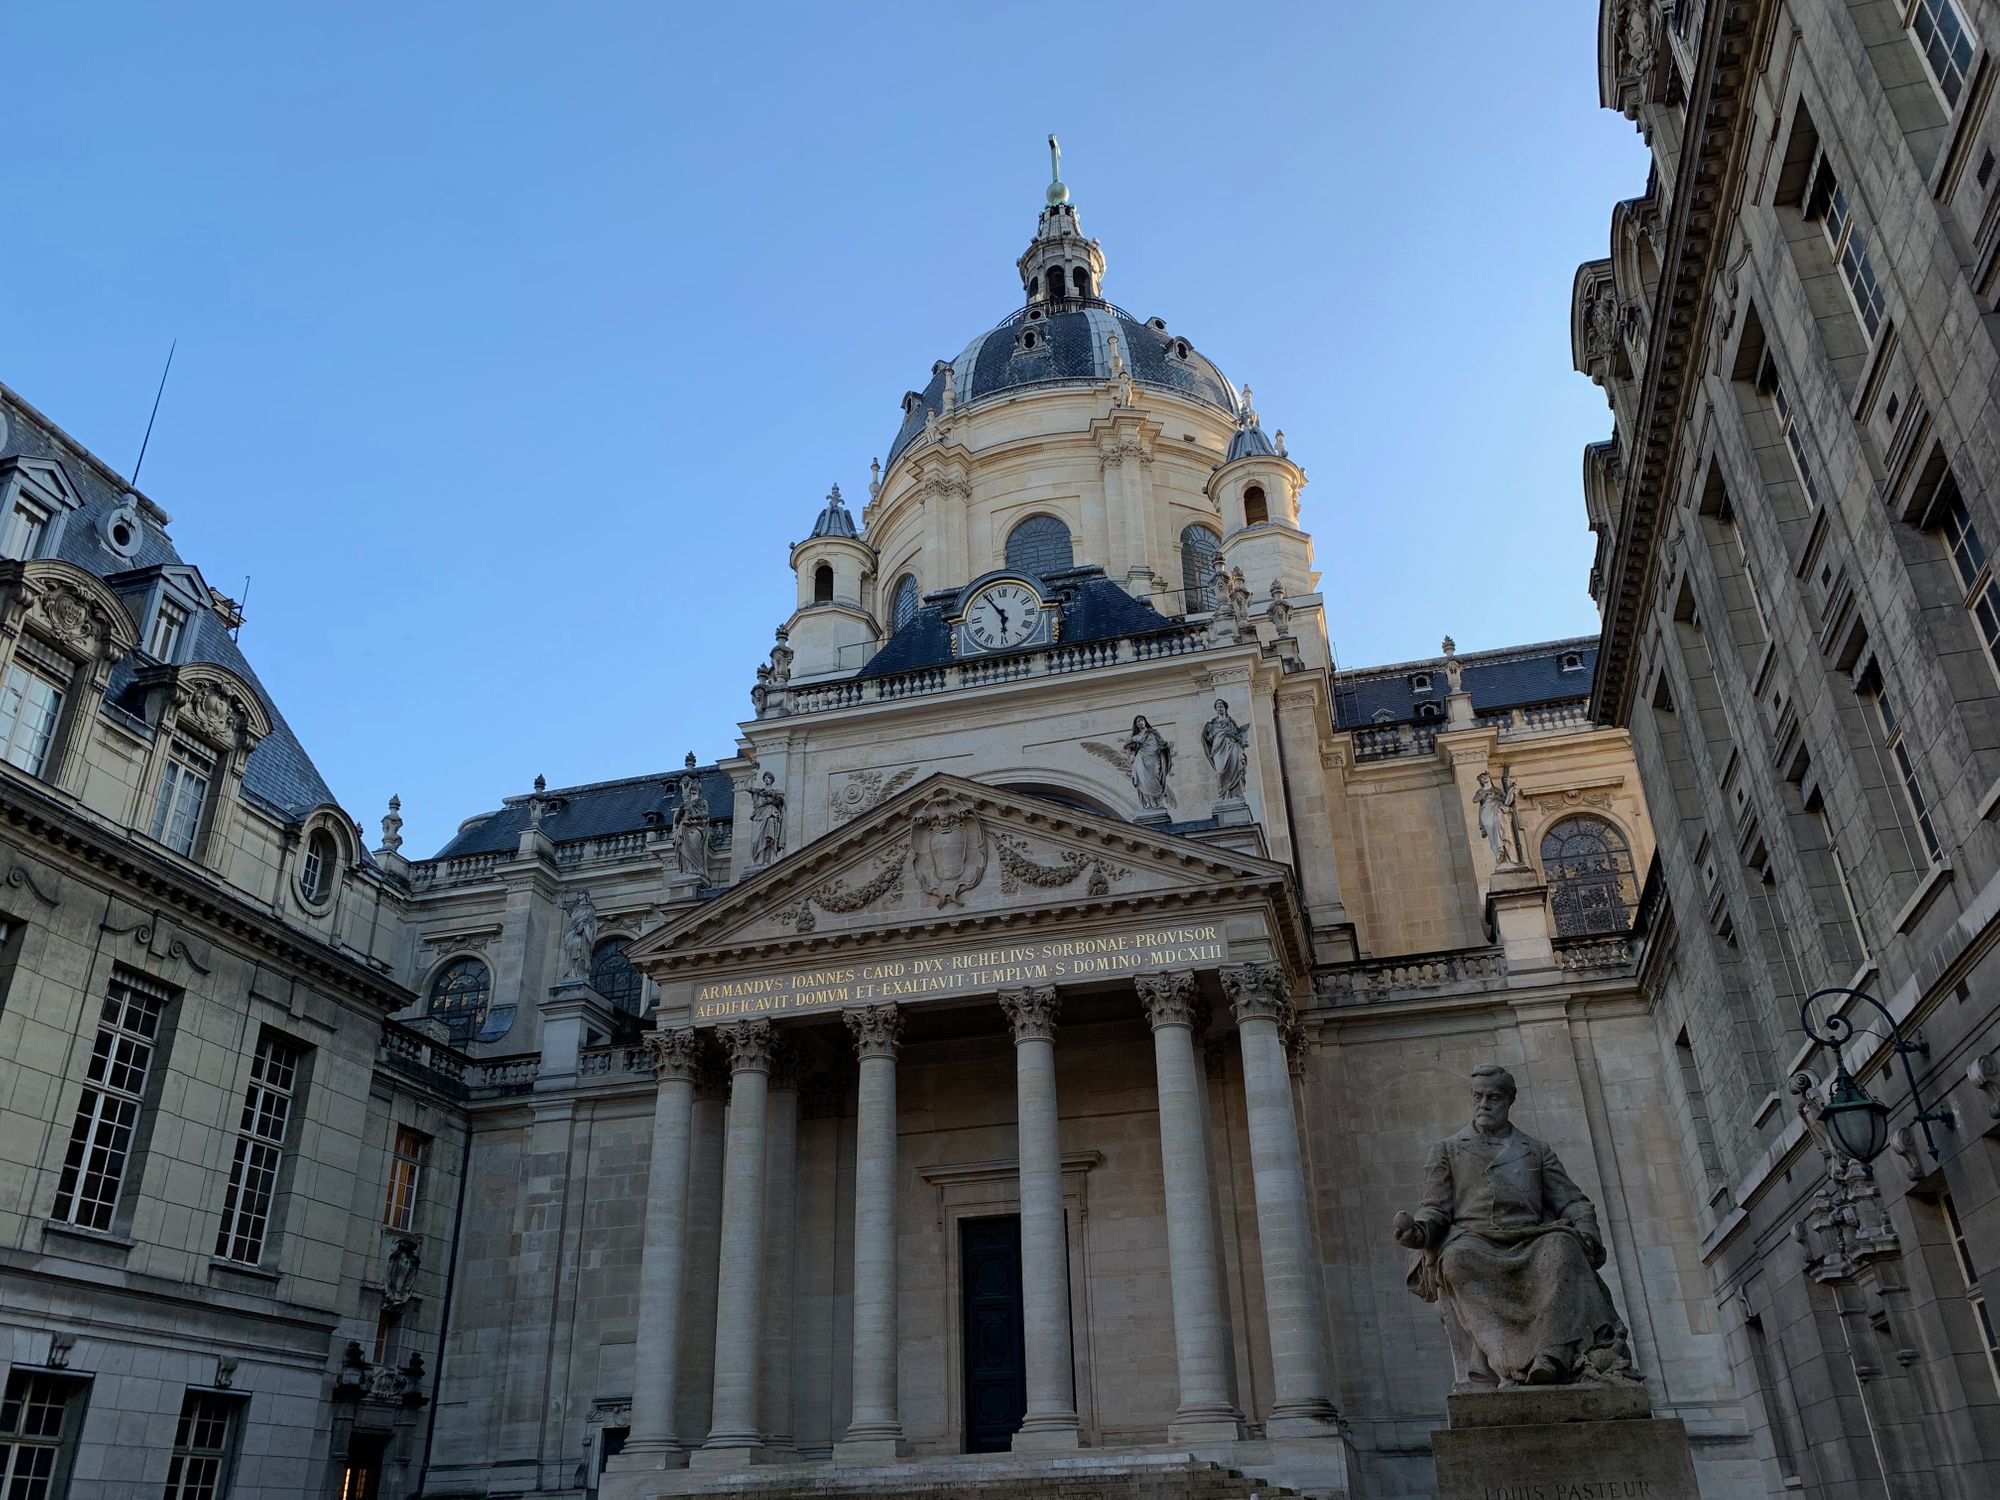 Rencontres autour du jeu 2019 : le GIS Jeu et Sociétés invite les acteurs majeurs du jeu en Sorbonne